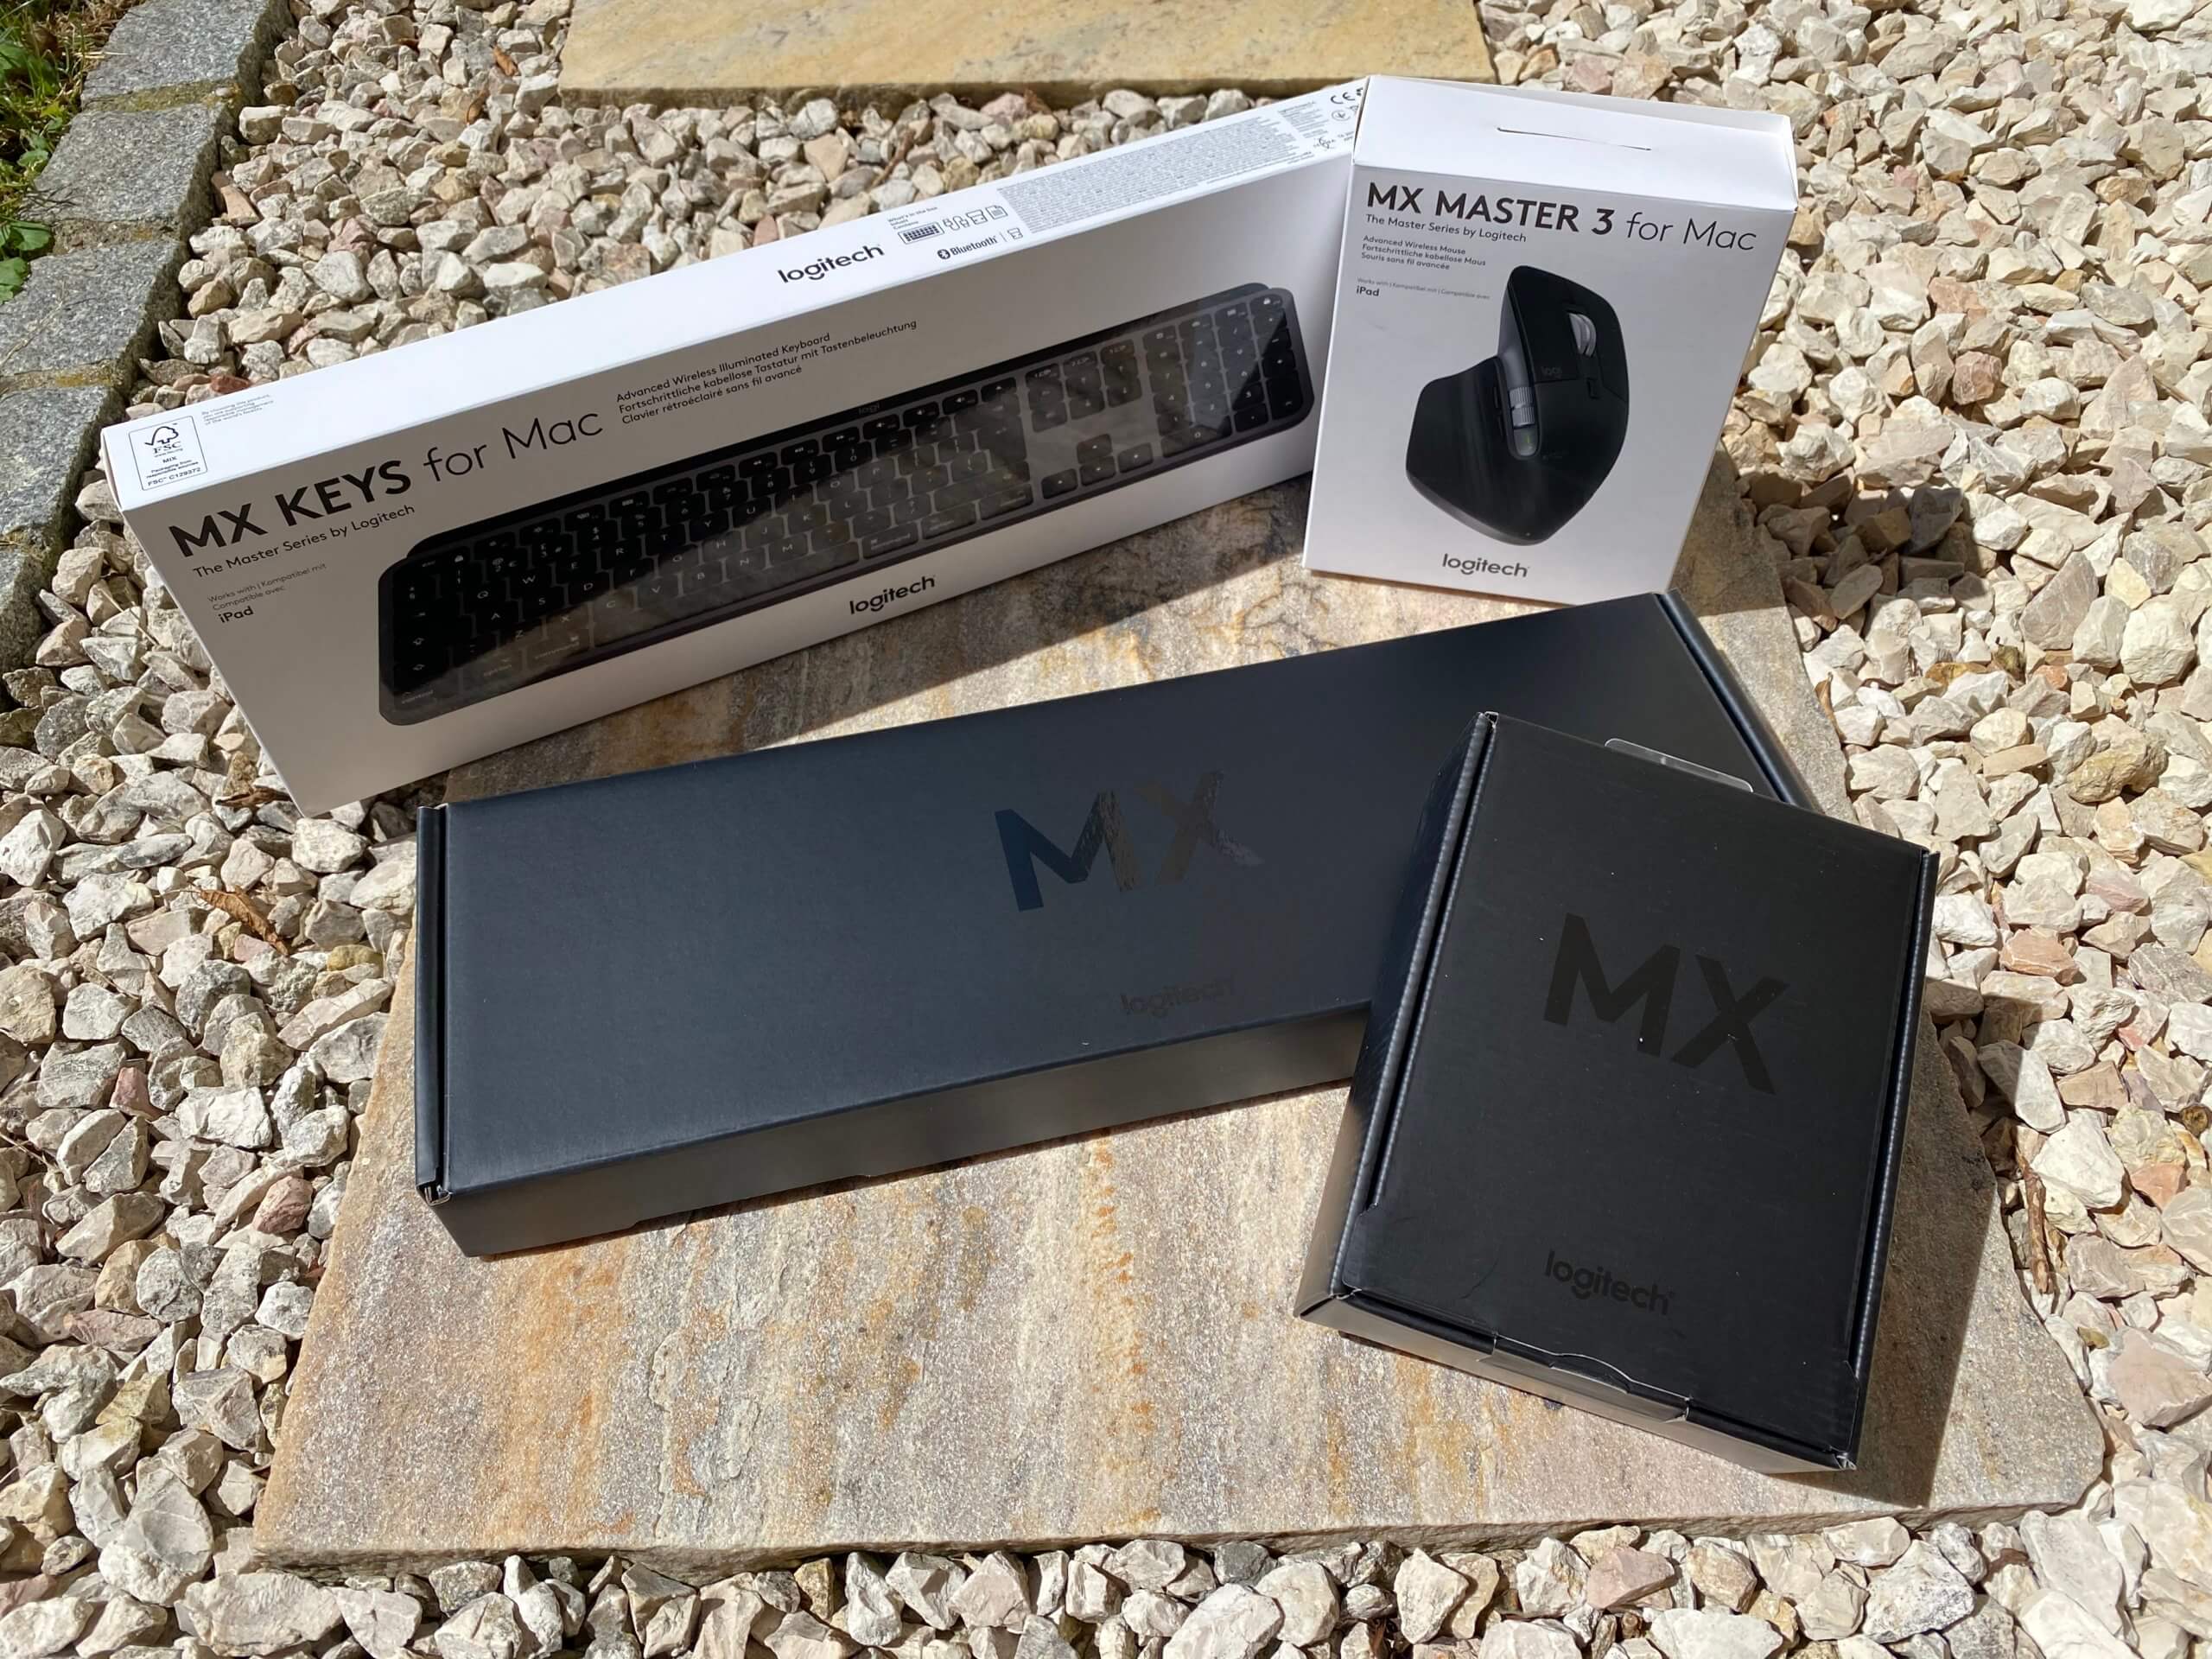 Verpackung der MX Master 3 und MX Keys